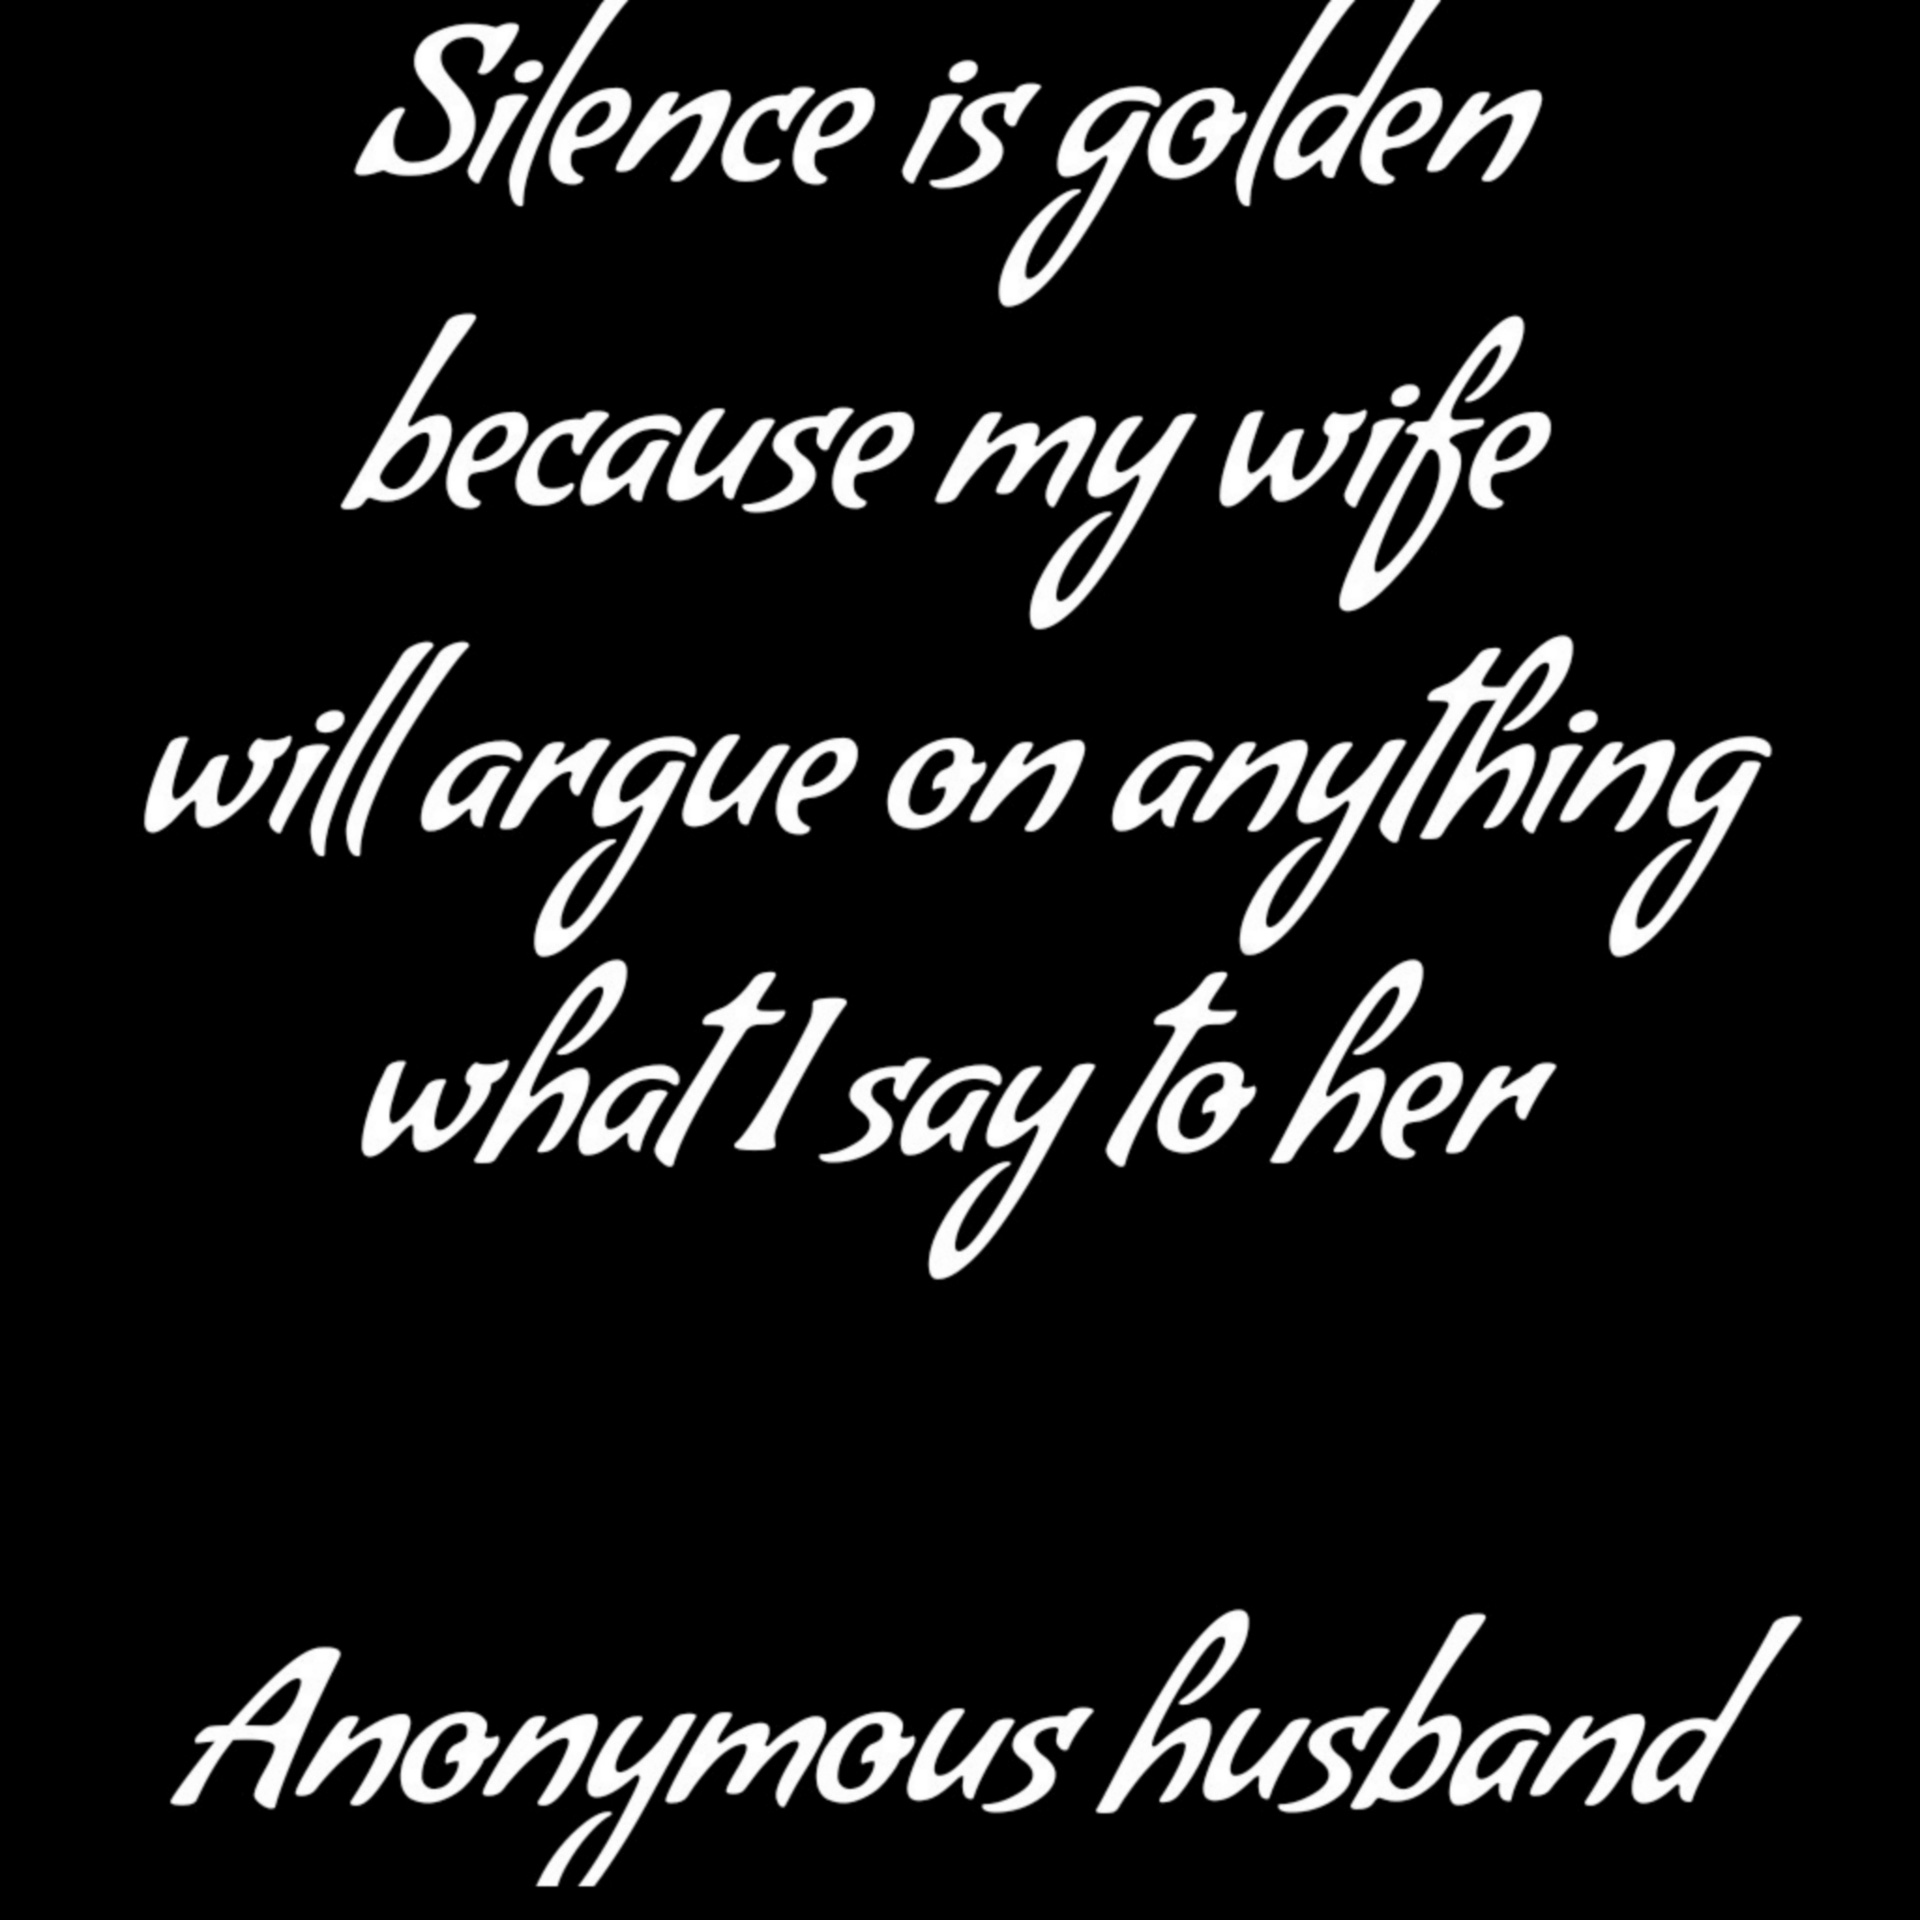 Anonieme echtgenoot op stilte